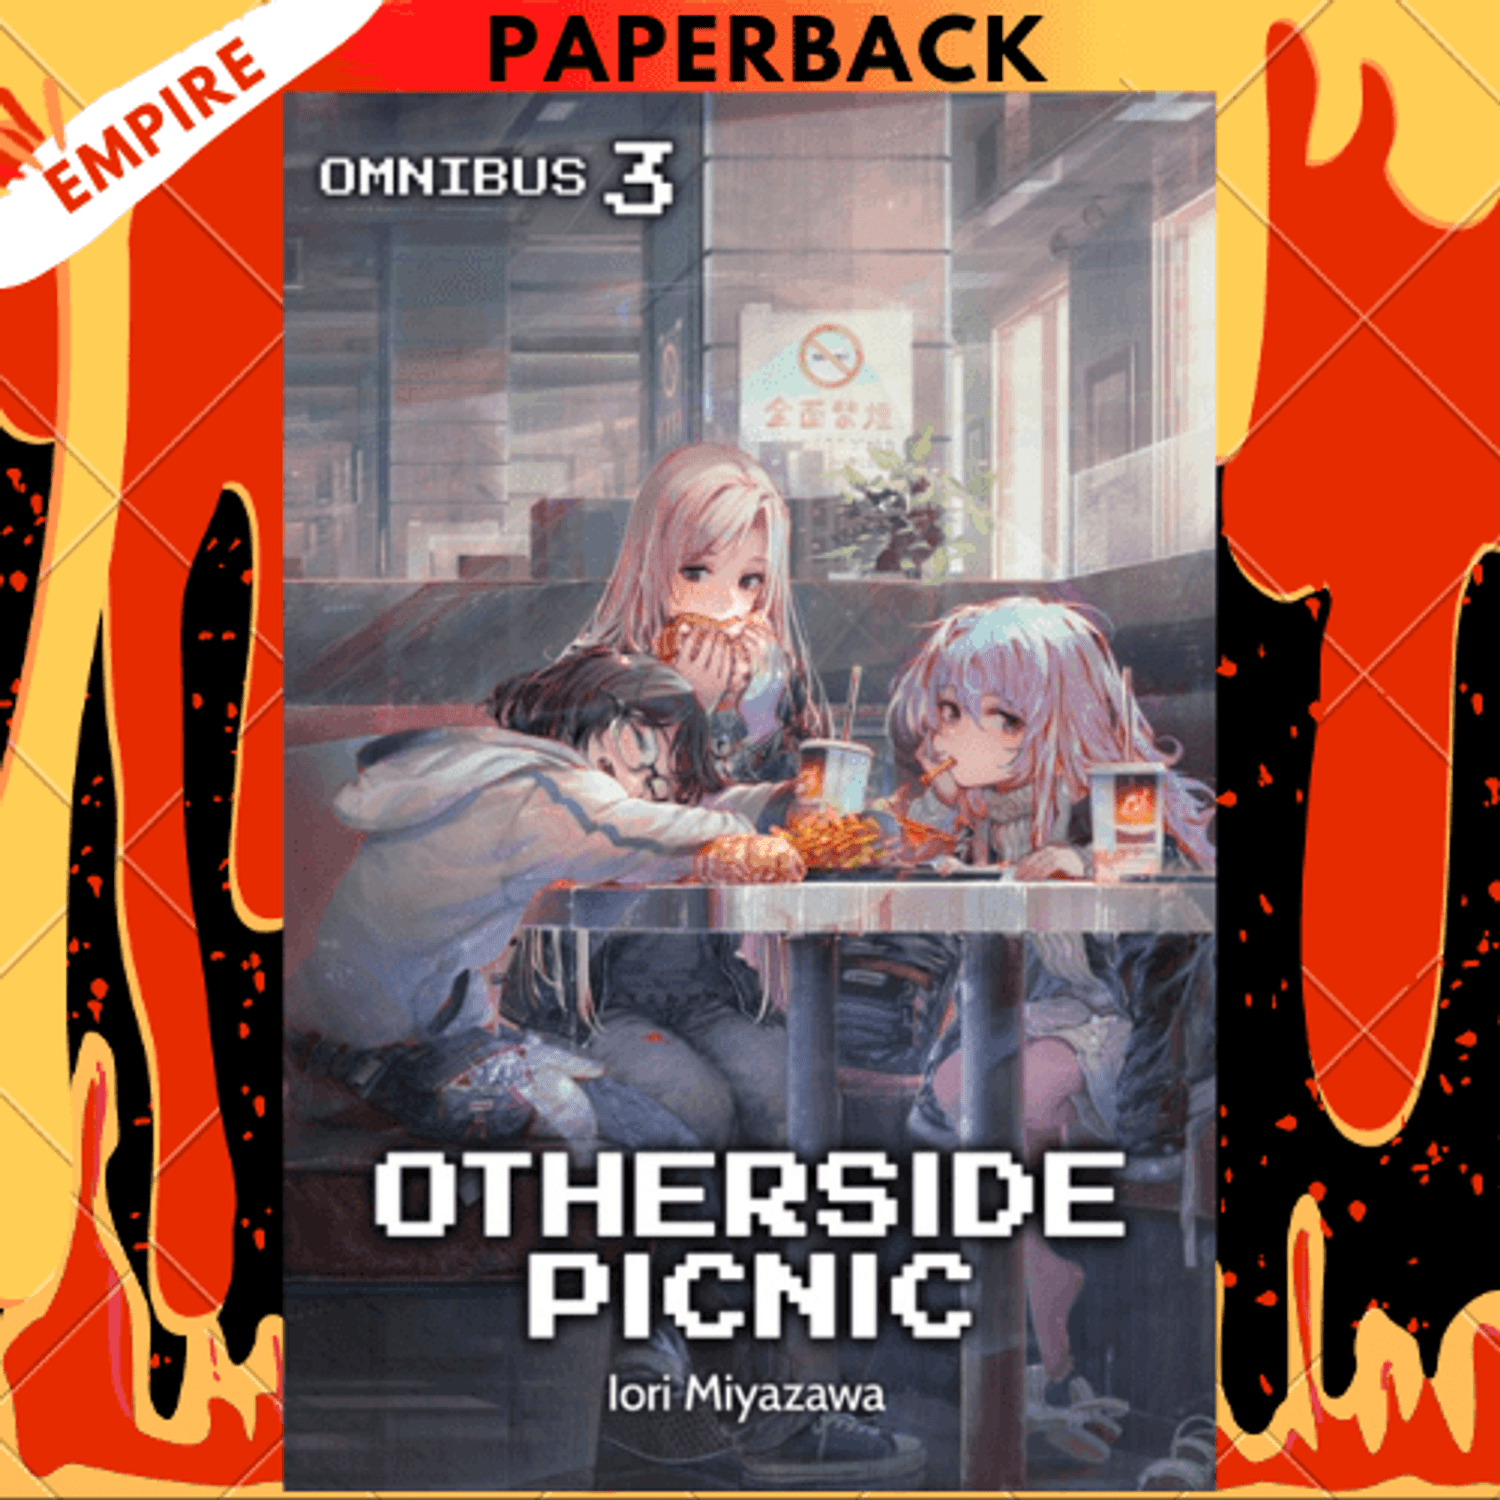 Otherside Picnic 03 (Manga) - by Iori Miyazawa (Paperback)